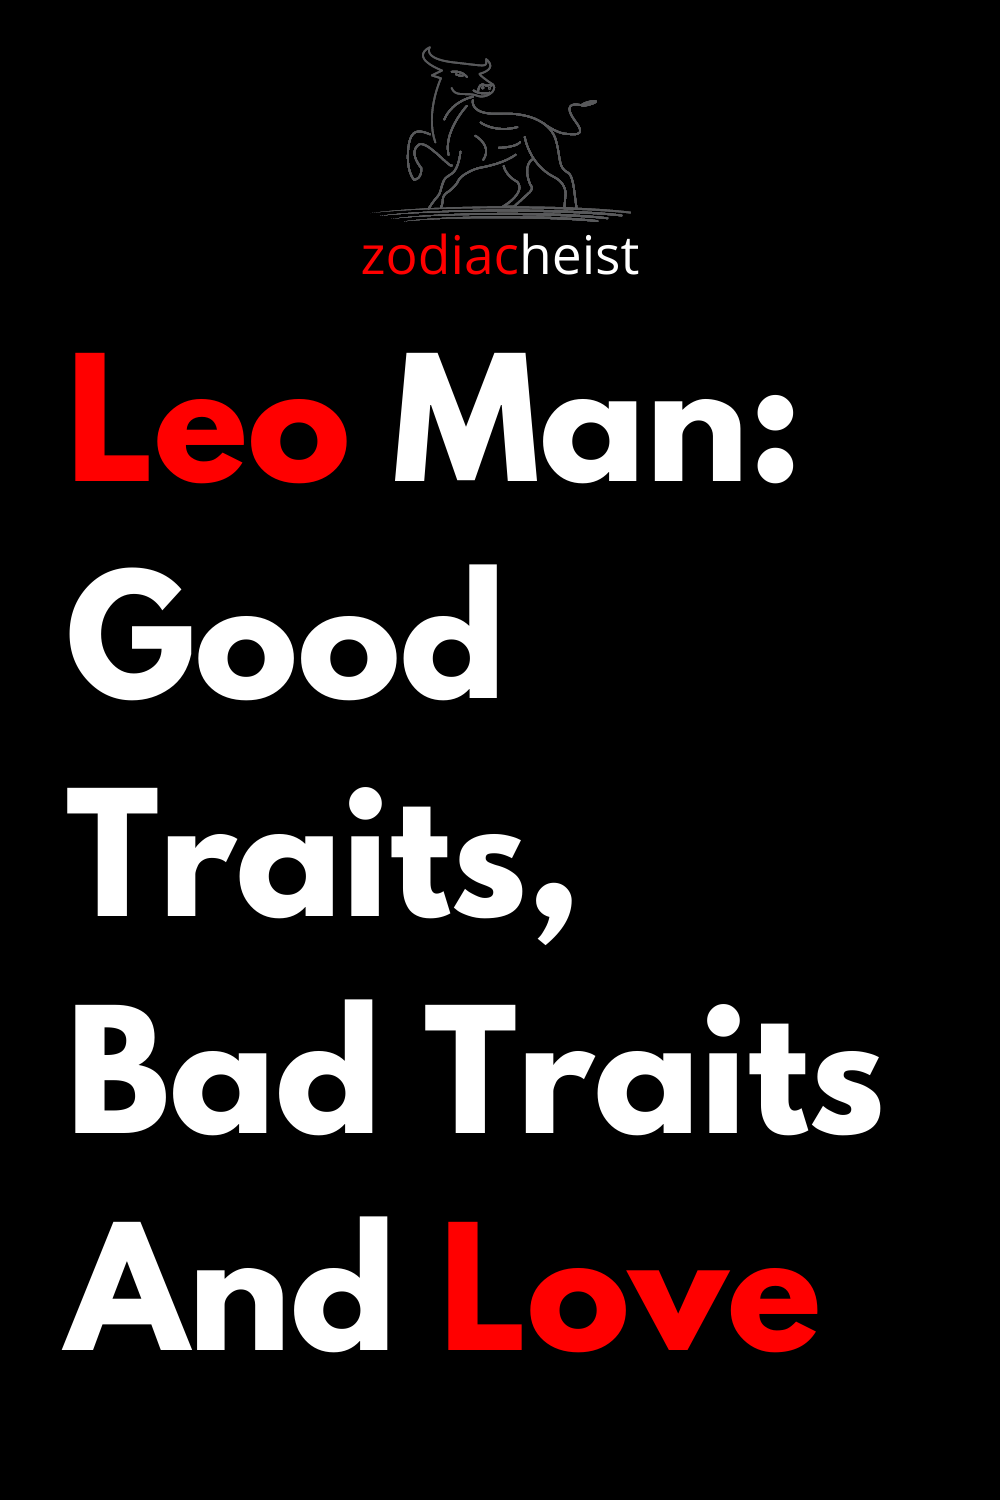 Leo Man: Good Traits, Bad Traits And Love